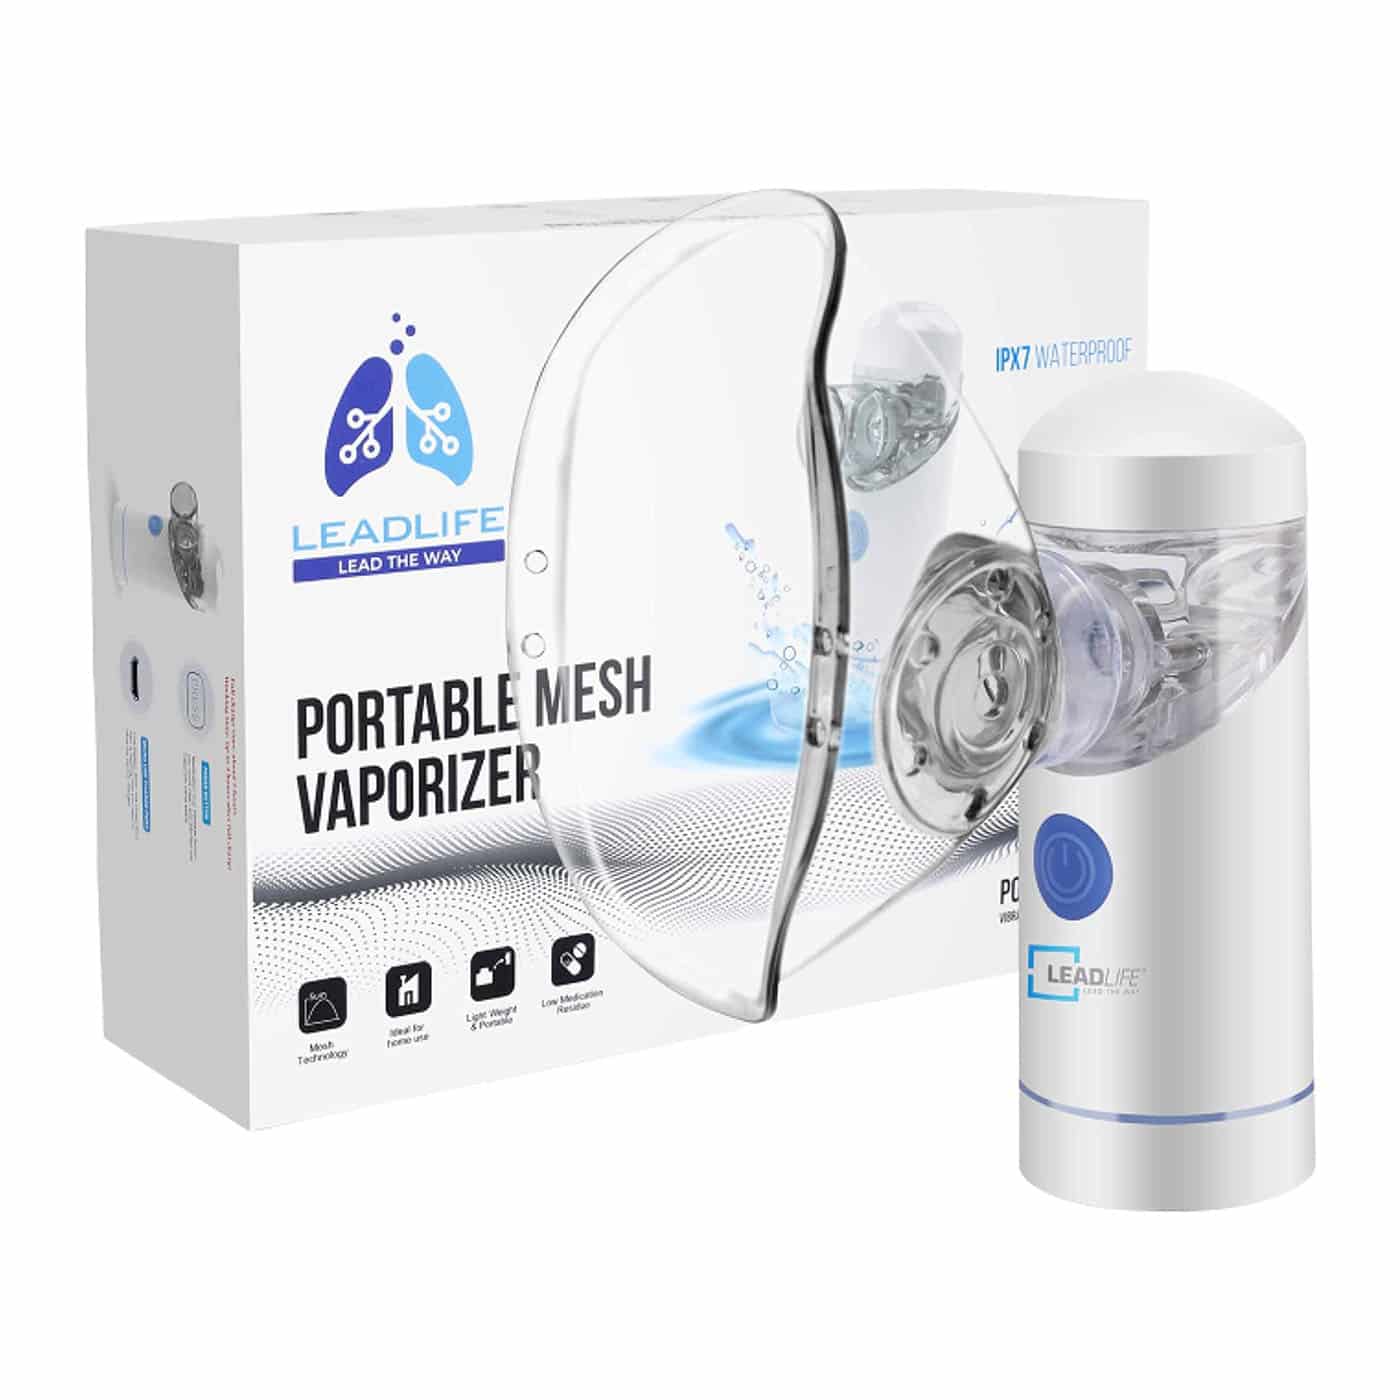 Portable Nebulizer, Handhold Mesh Atomizer